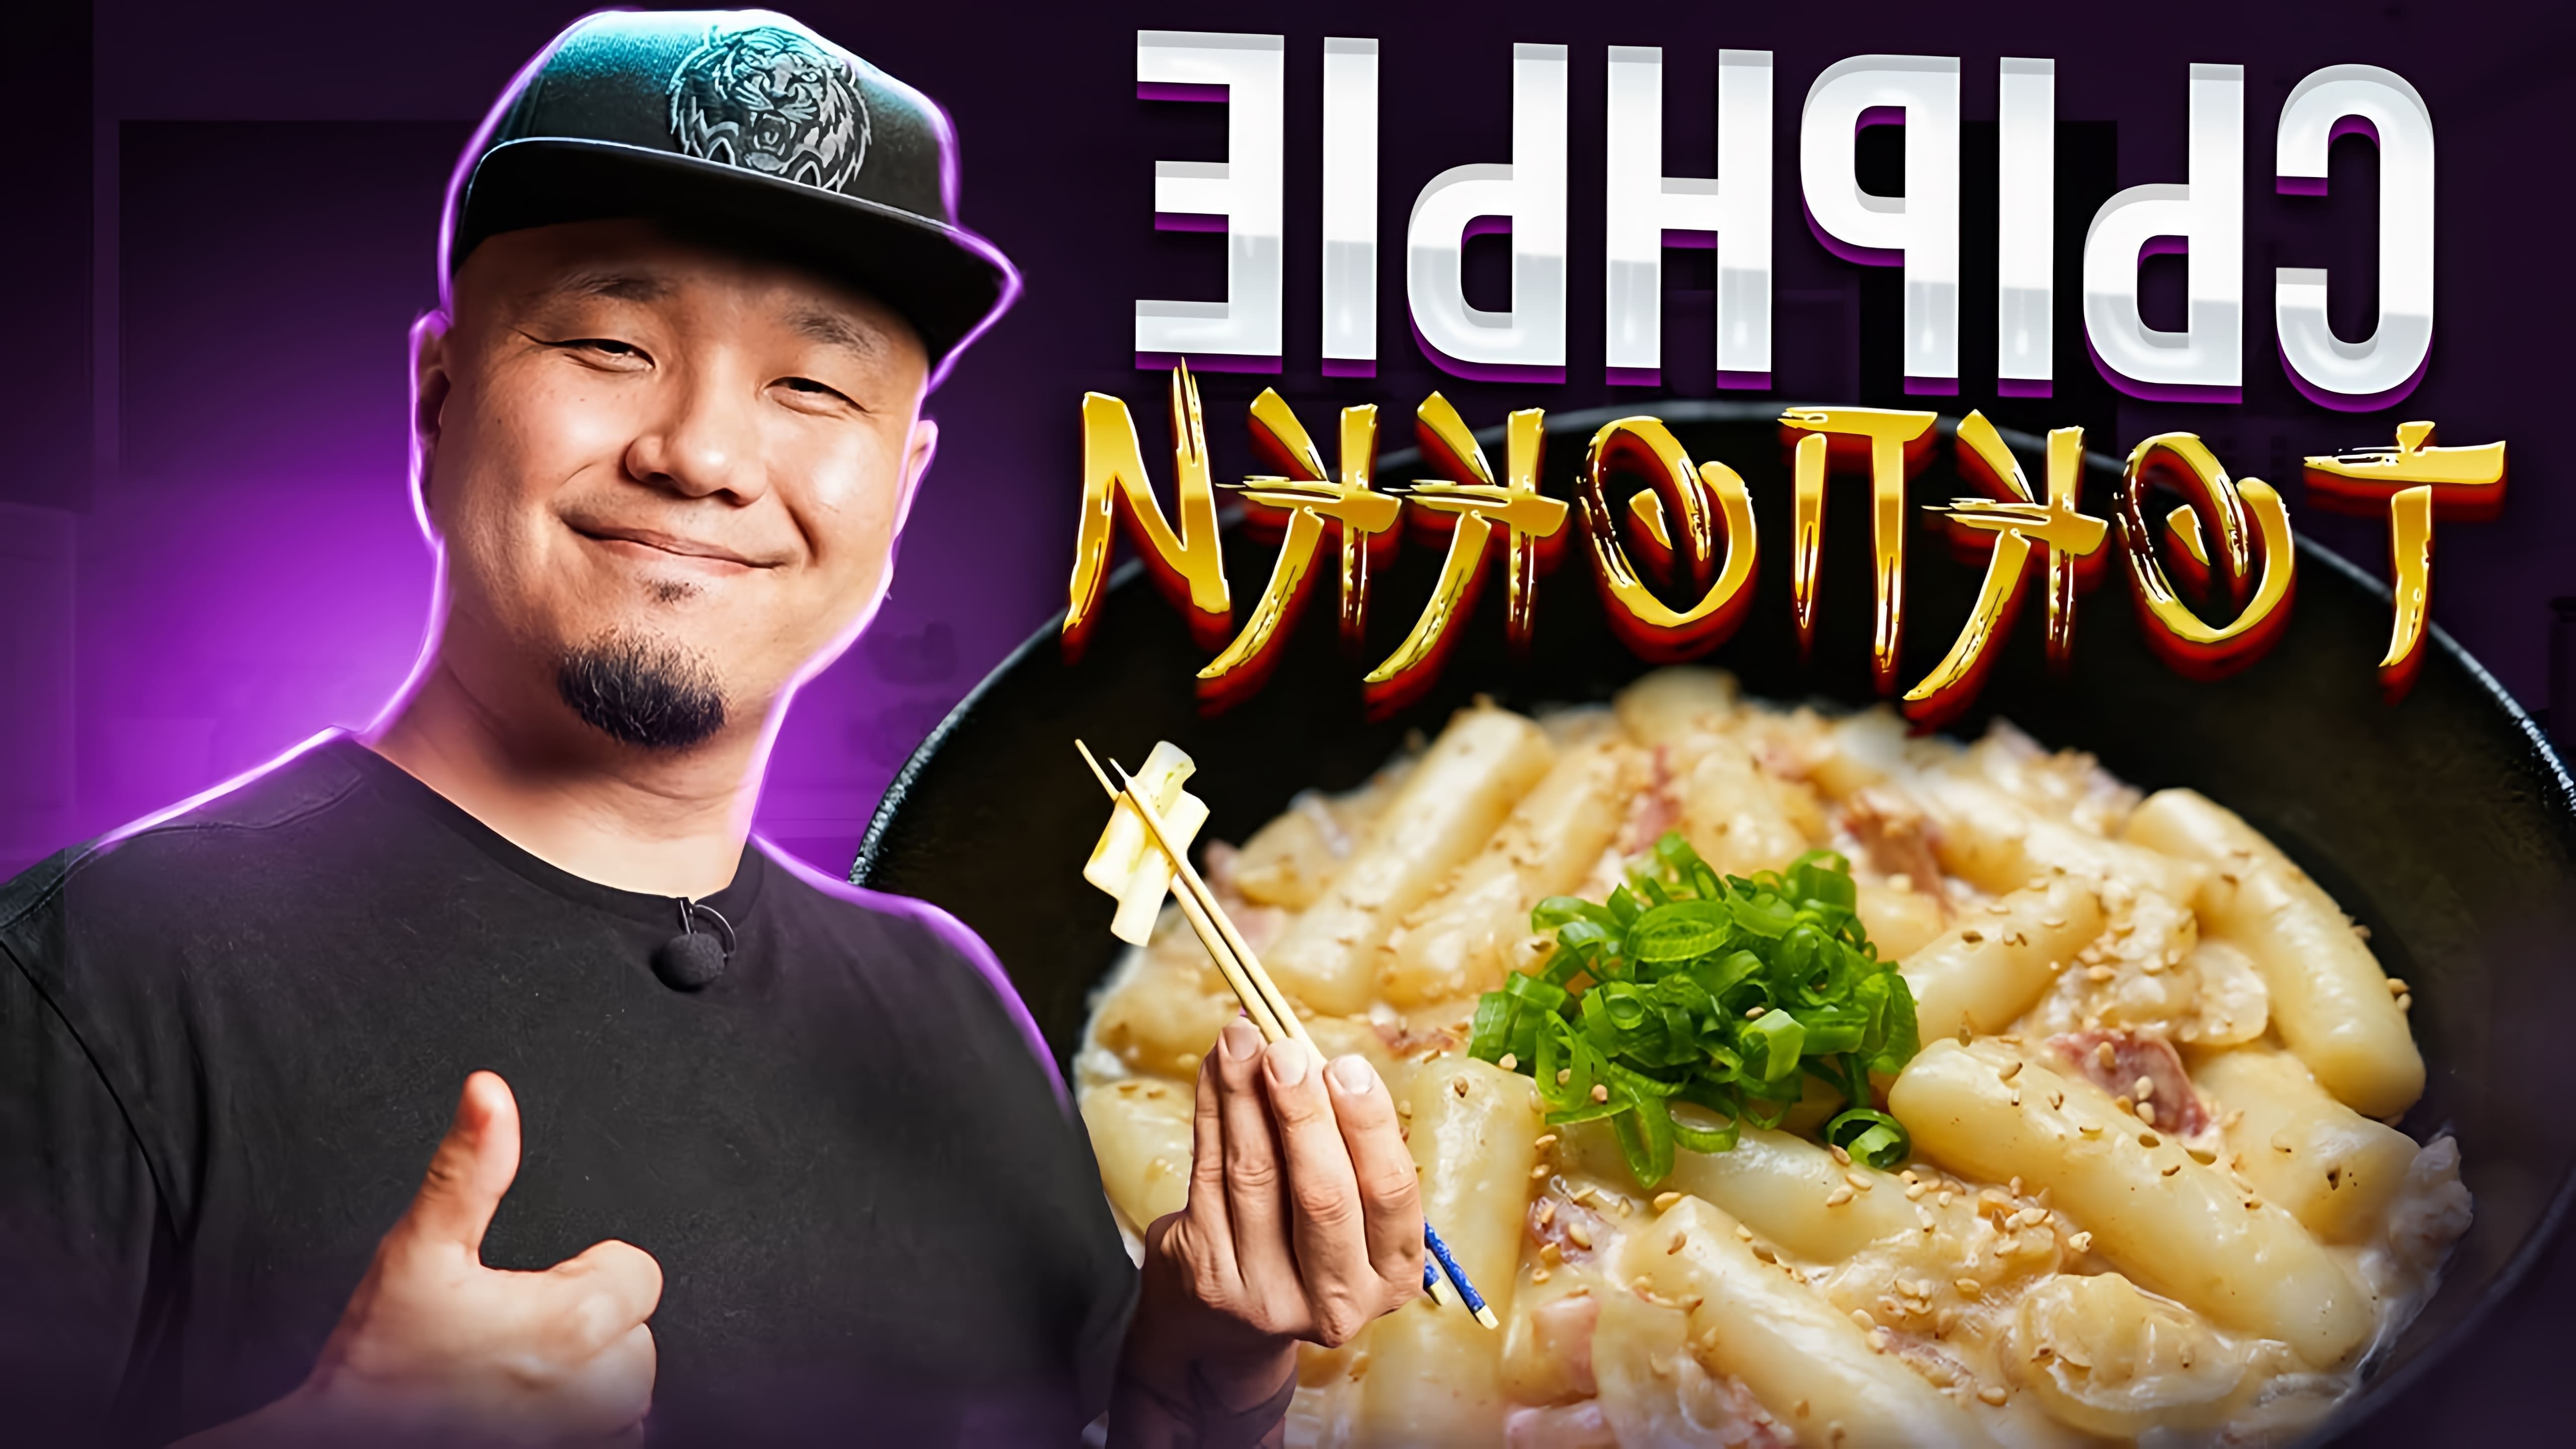 В этом видео демонстрируется рецепт приготовления крем-токпоки, популярного корейского стритфуда